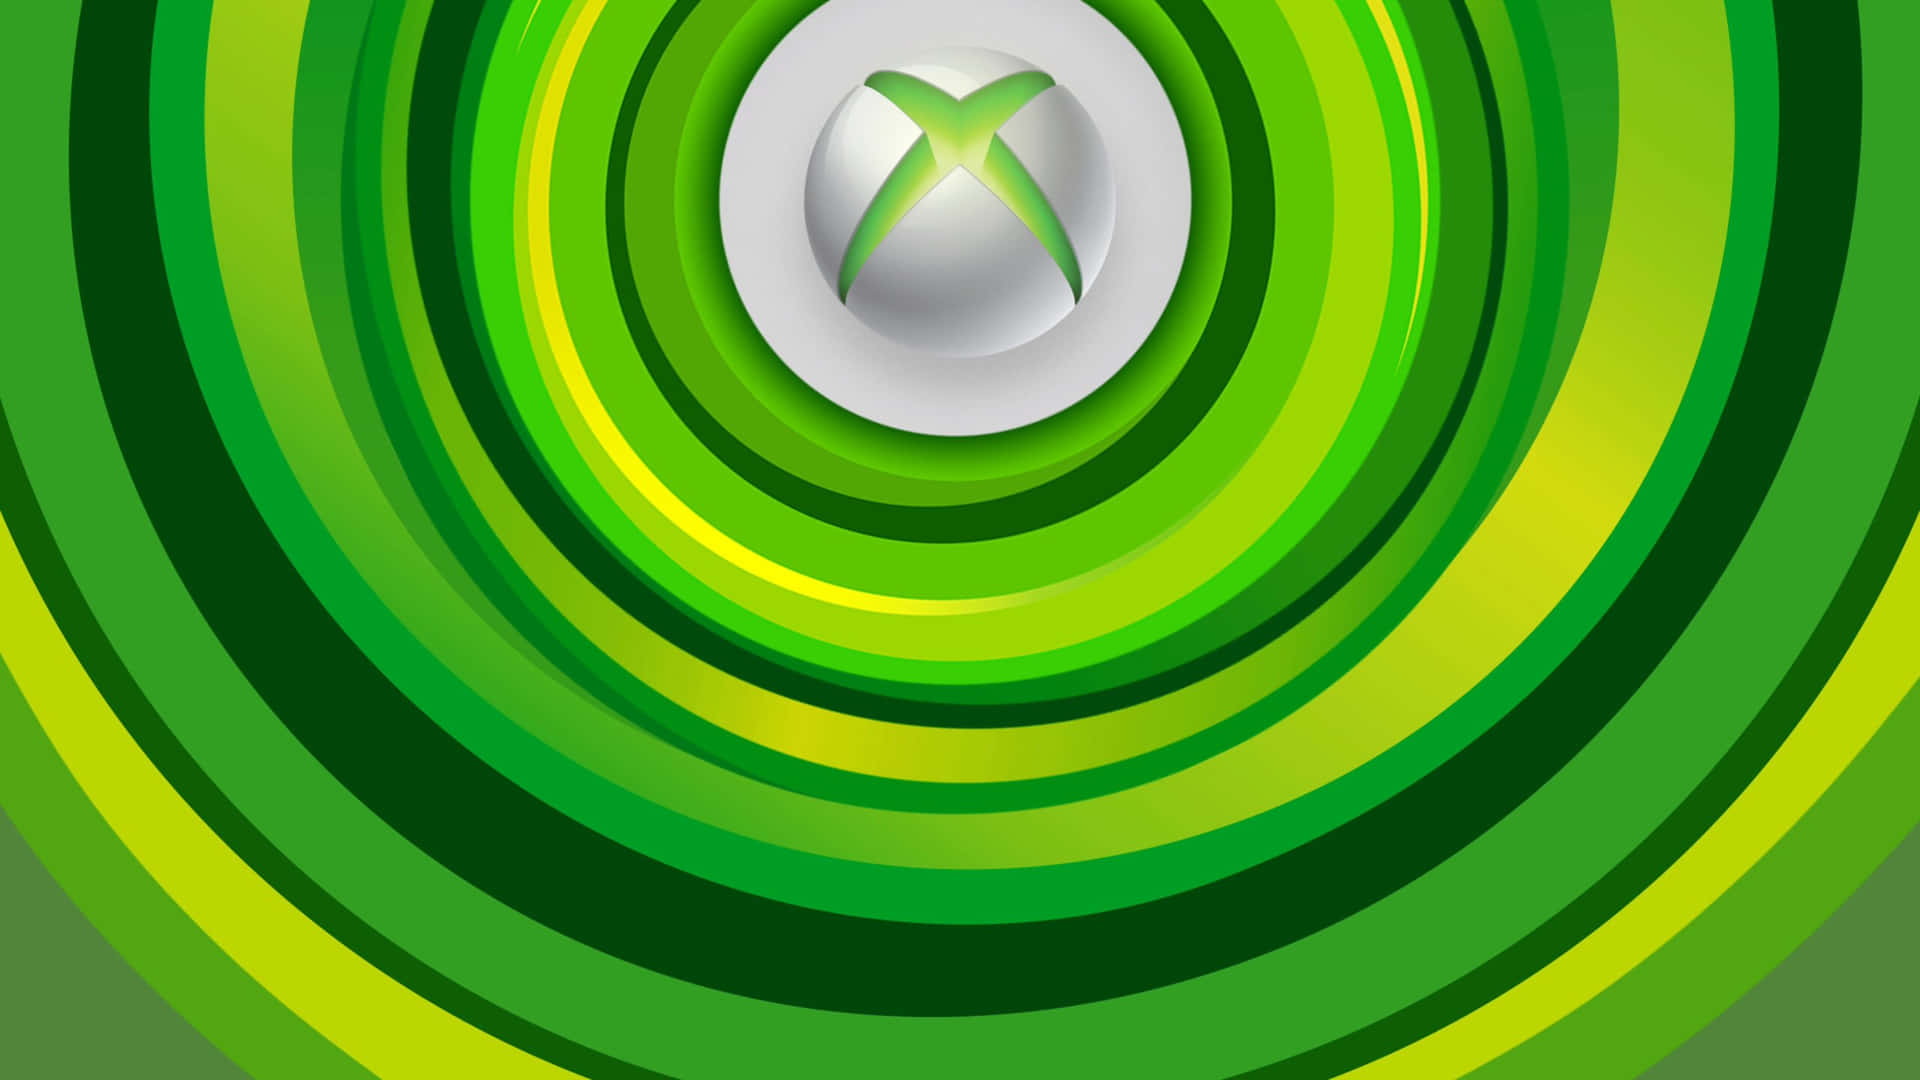 Xbox Live Wallpapers - Xbox Live Wallpapers